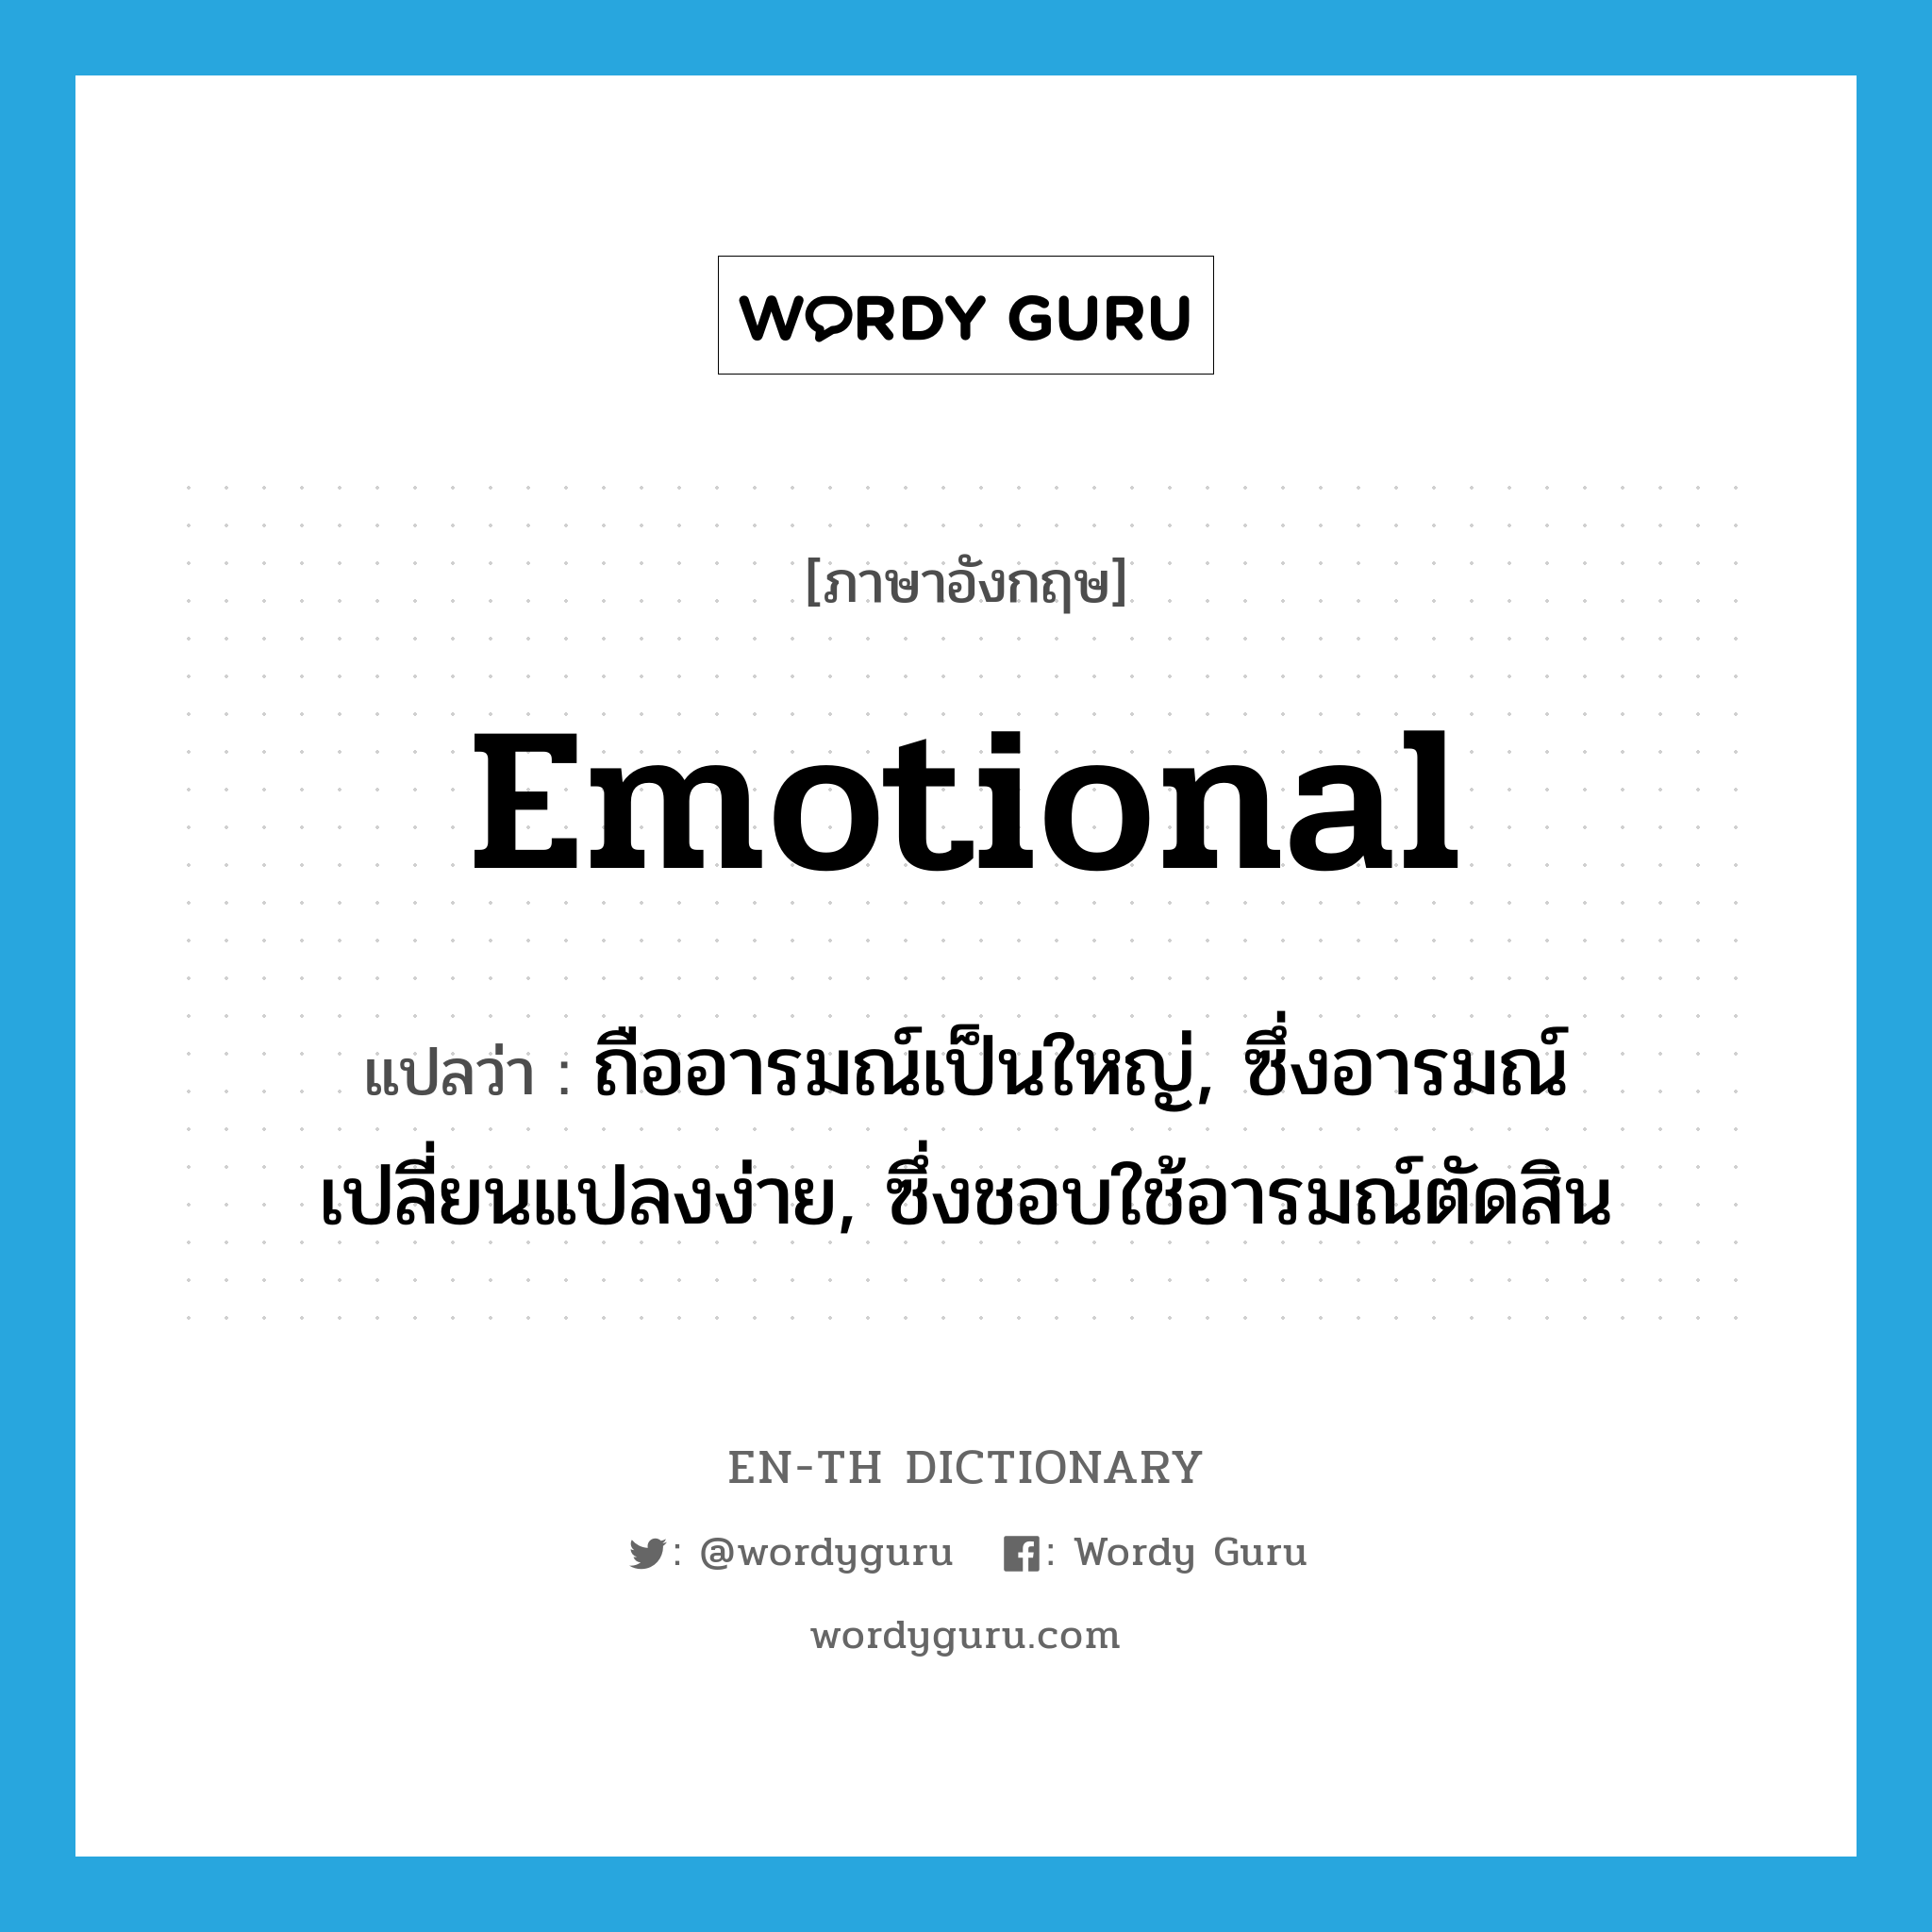 emotional แปลว่า?, คำศัพท์ภาษาอังกฤษ emotional แปลว่า ถืออารมณ์เป็นใหญ่, ซึ่งอารมณ์เปลี่ยนแปลงง่าย, ซึ่งชอบใช้อารมณ์ตัดสิน ประเภท ADJ หมวด ADJ